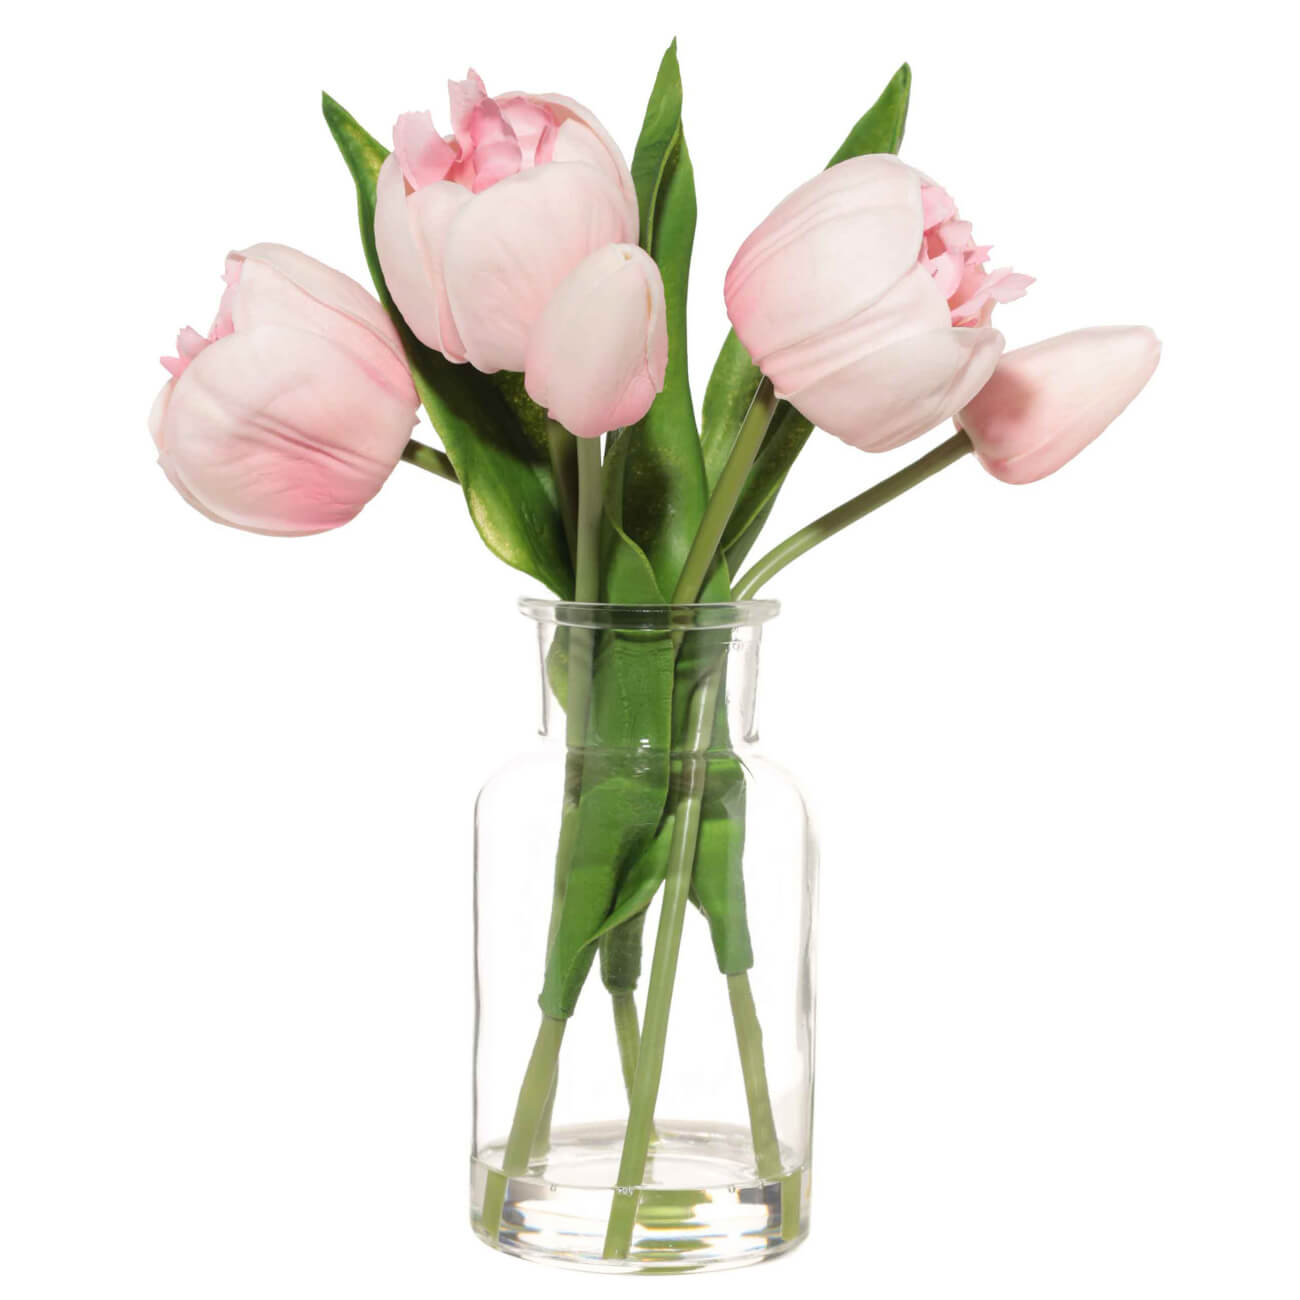 Букет искусственный, 21 см, в вазе, полиуретан/стекло, Розовые тюльпаны, Tulip garden букет очный фейерверк